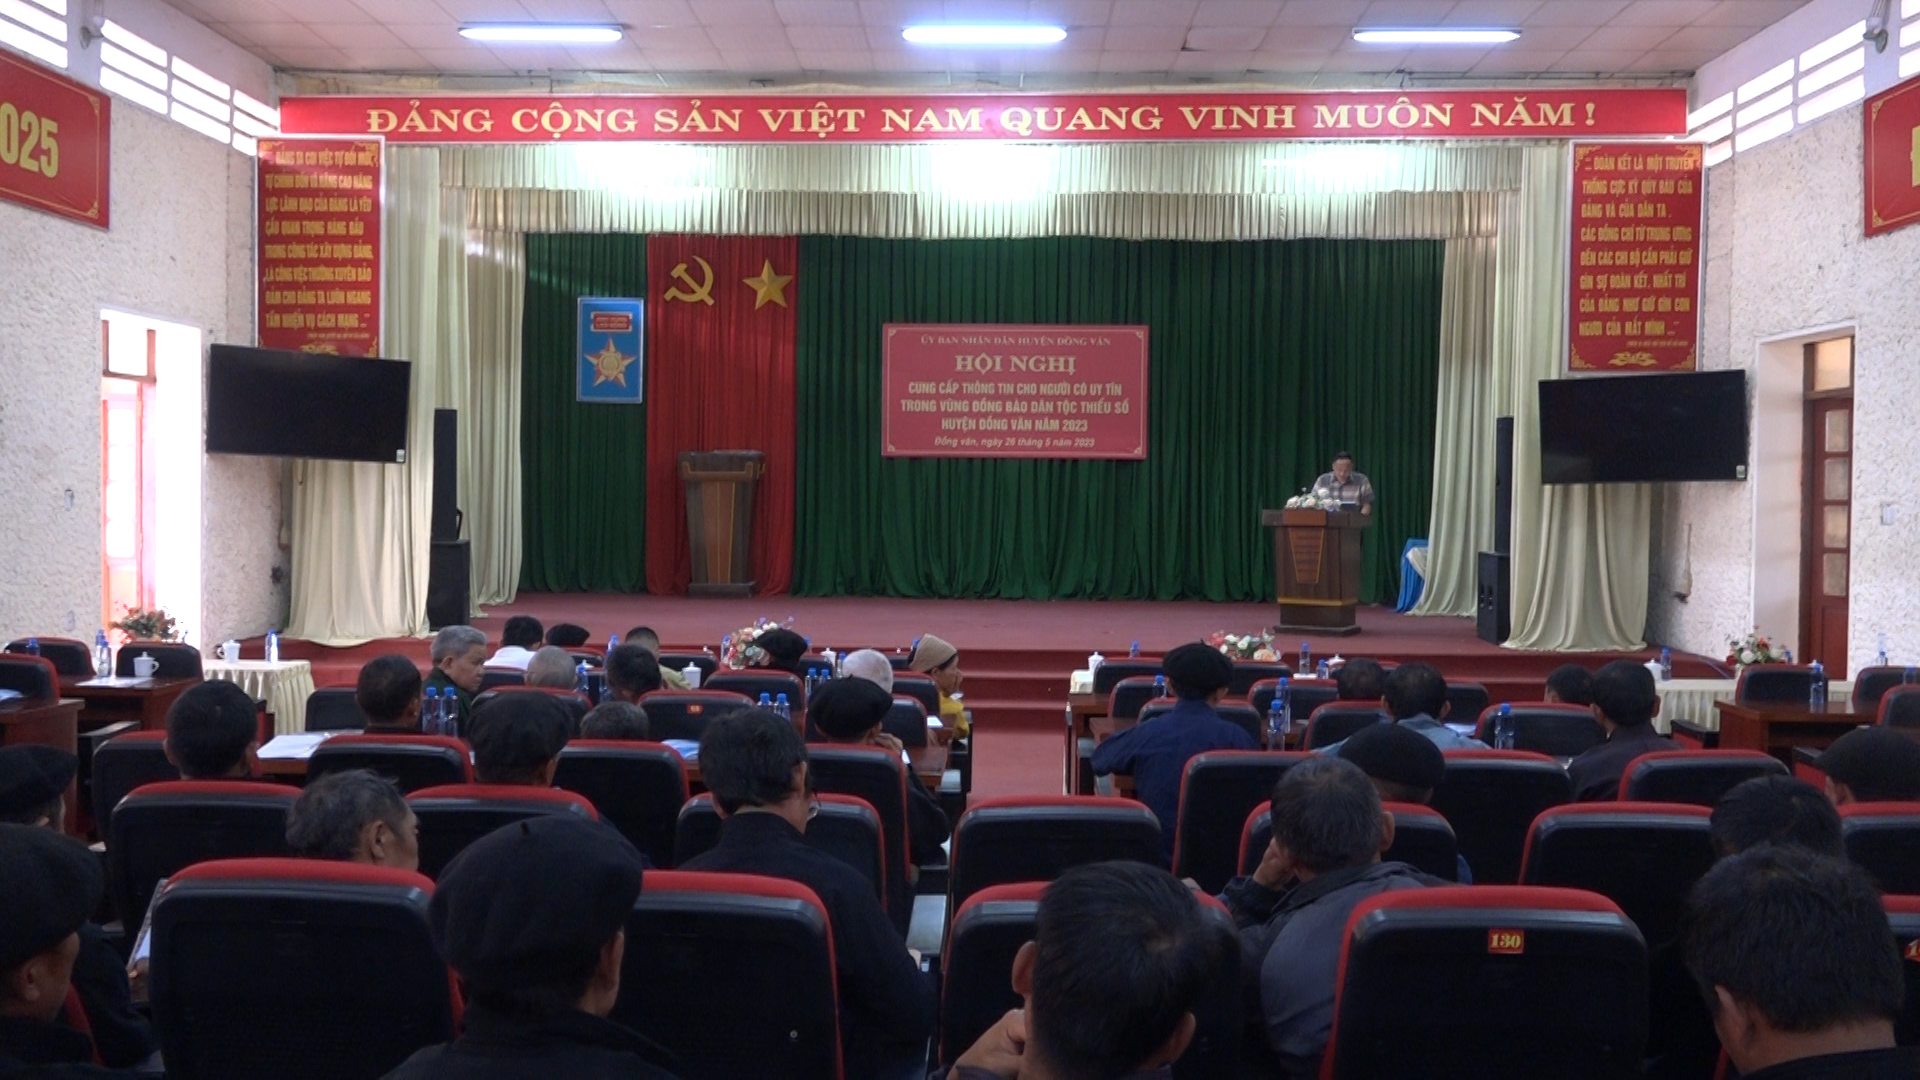 Hội nghị cung cấp thông tin cho đồng bào dân tộc thiểu số và miền núi tại huyện Đồng Văn